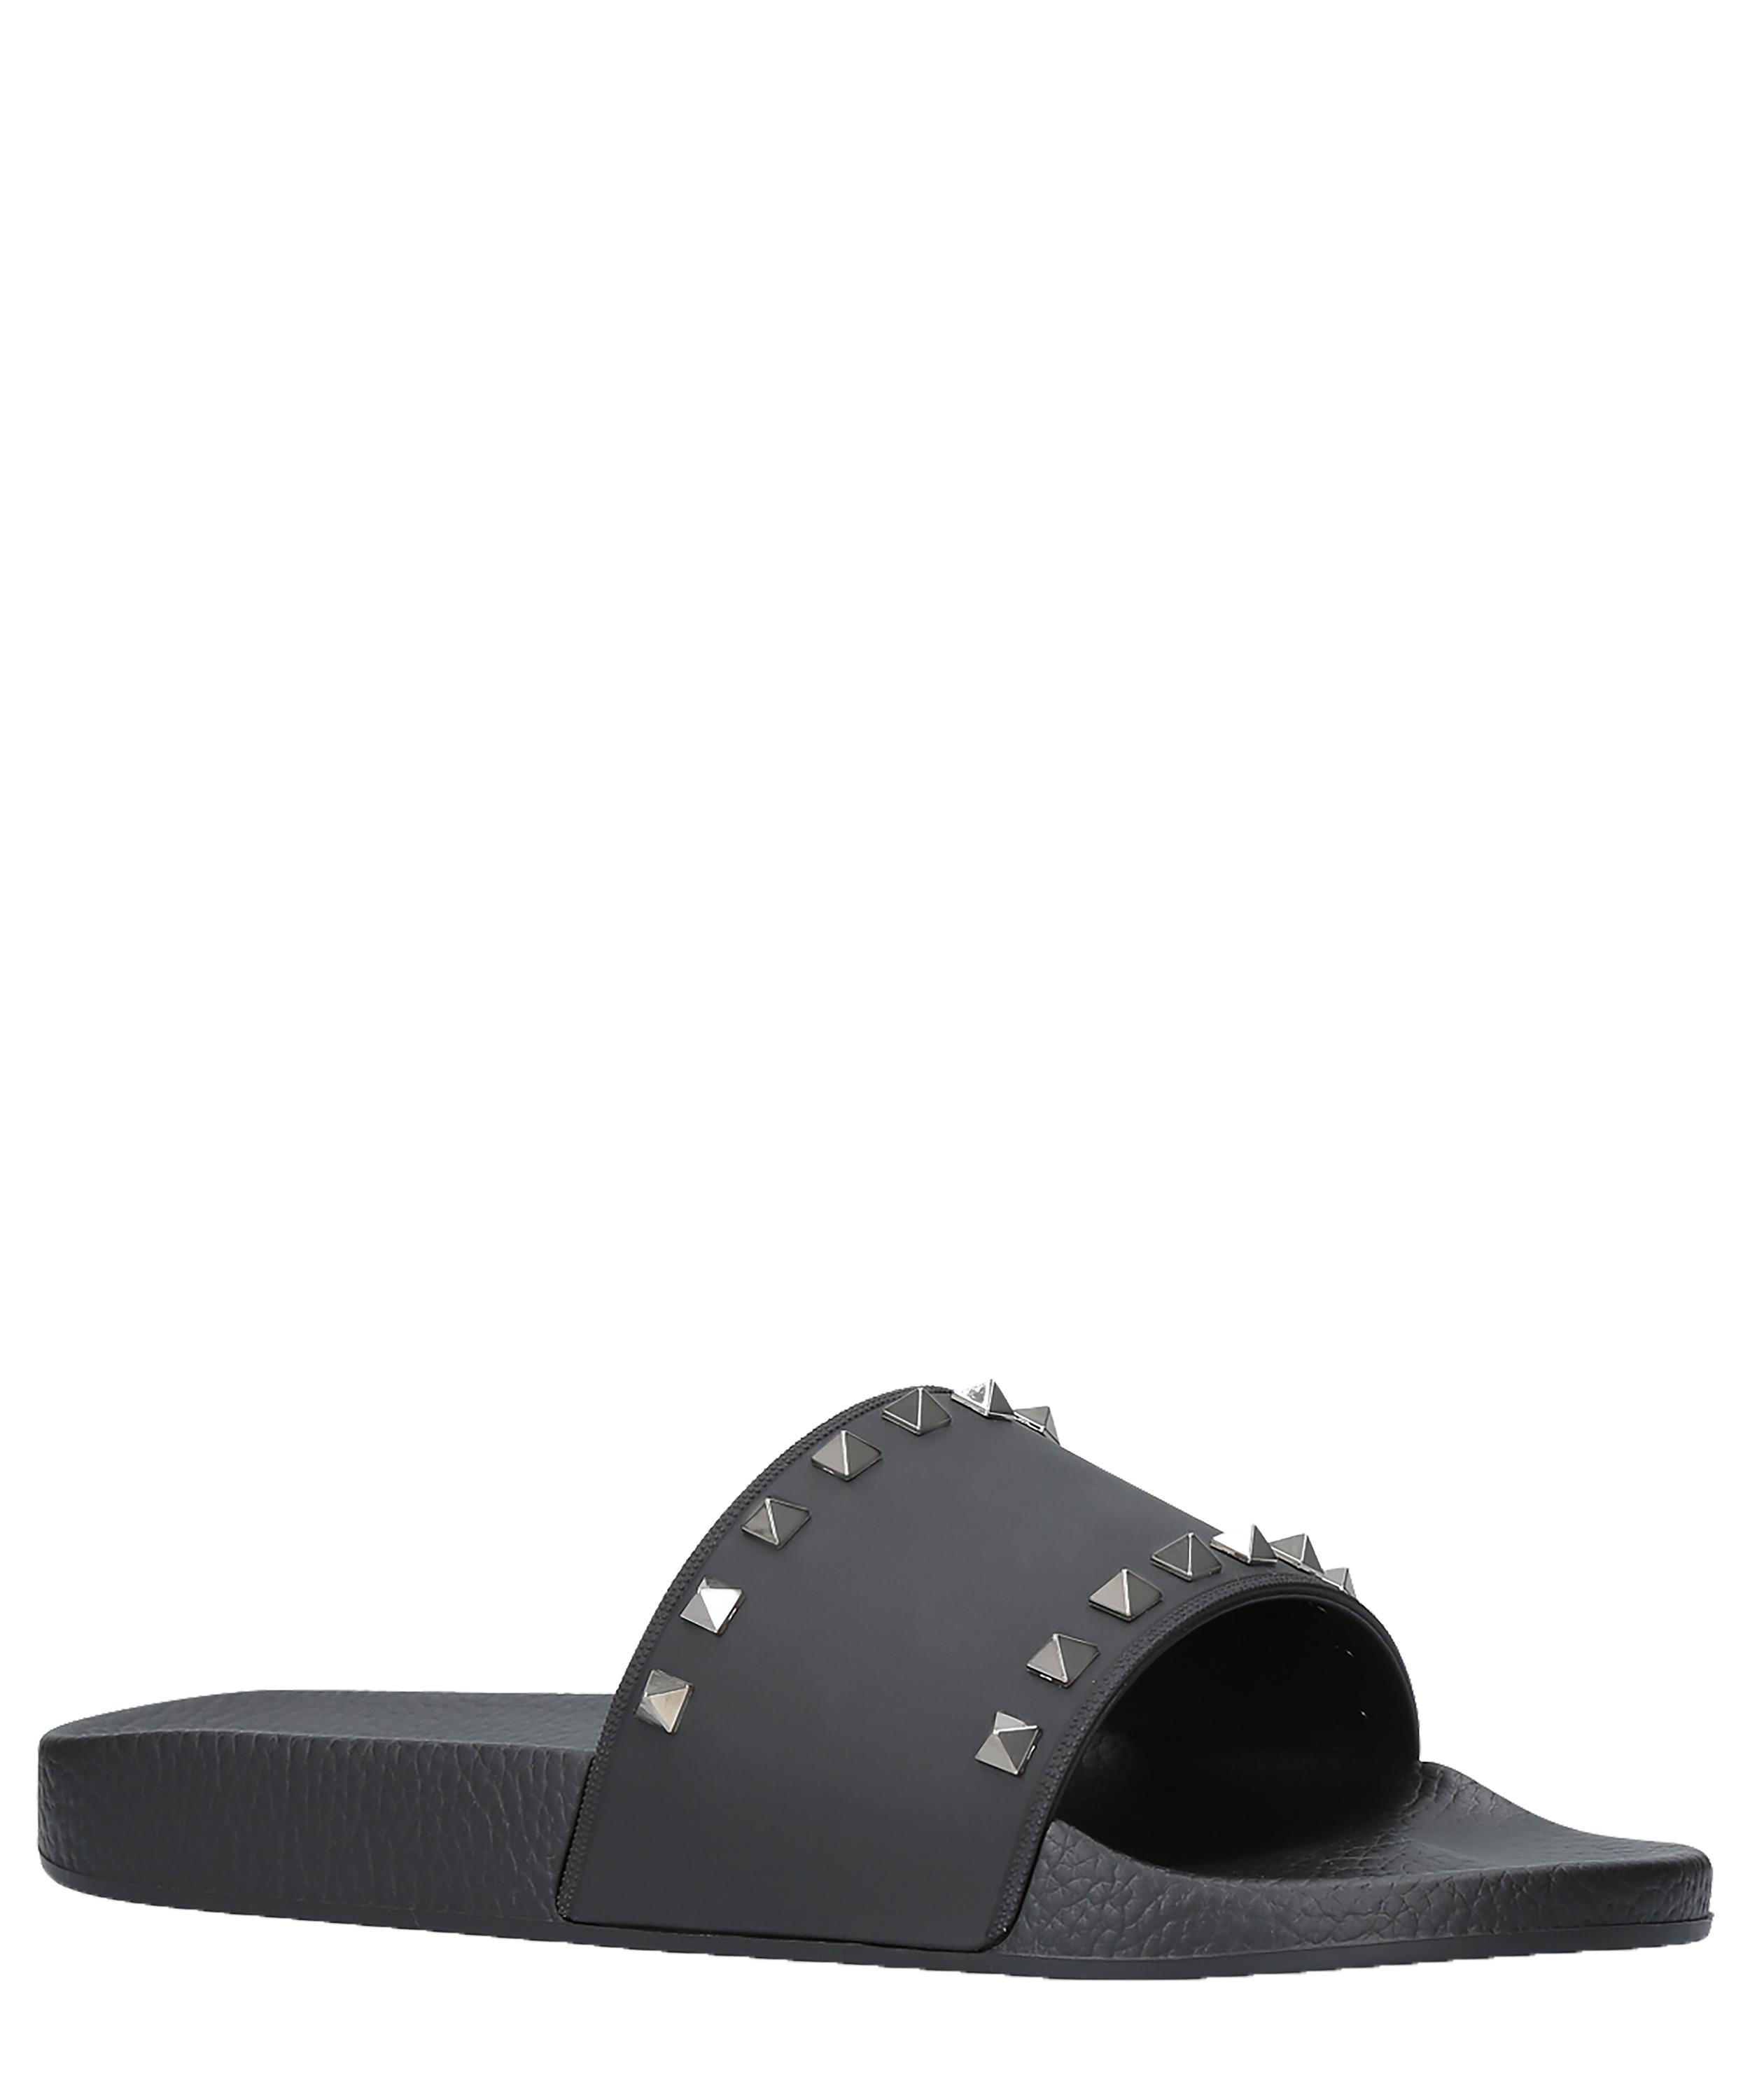 Valentino Rockstud Rubber Slider Sandal in Black for Men - Save 48% - Lyst